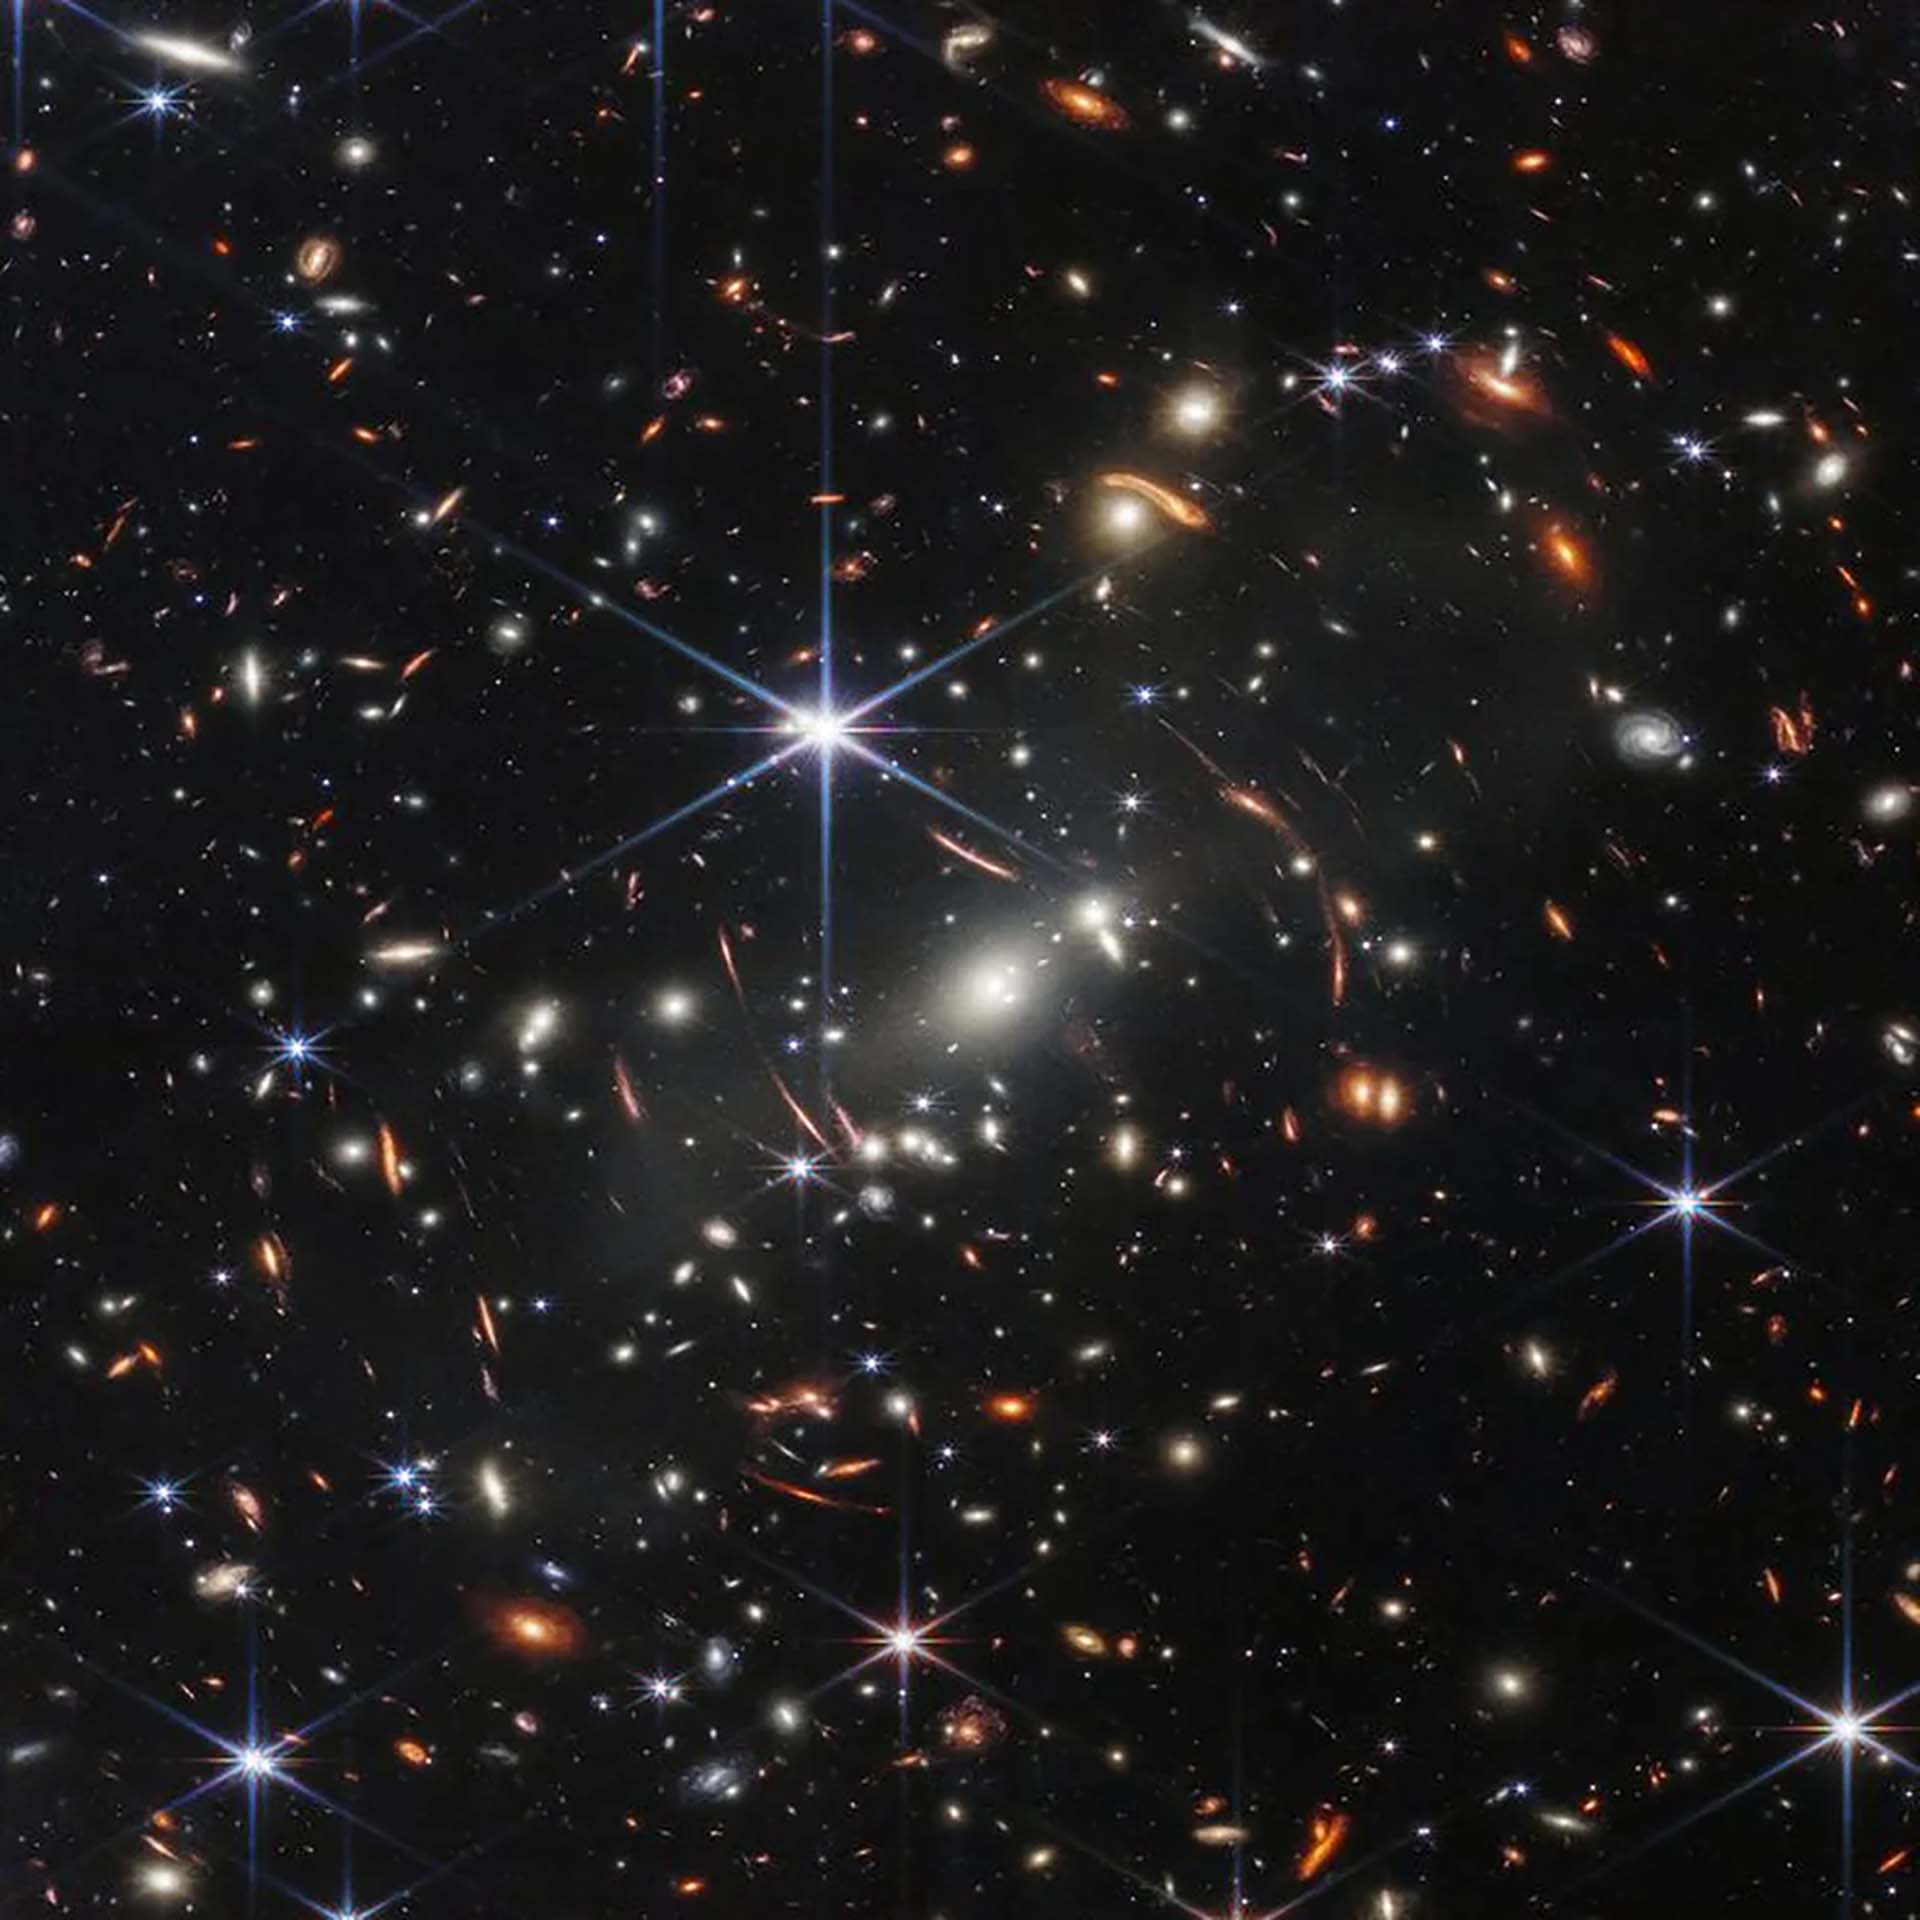 El telescopio espacial James Webb reveló hace pocas semanas una imagen que contiene los cúmulos globulares más distantes y antiguos que se hayan descubierto en el espacio